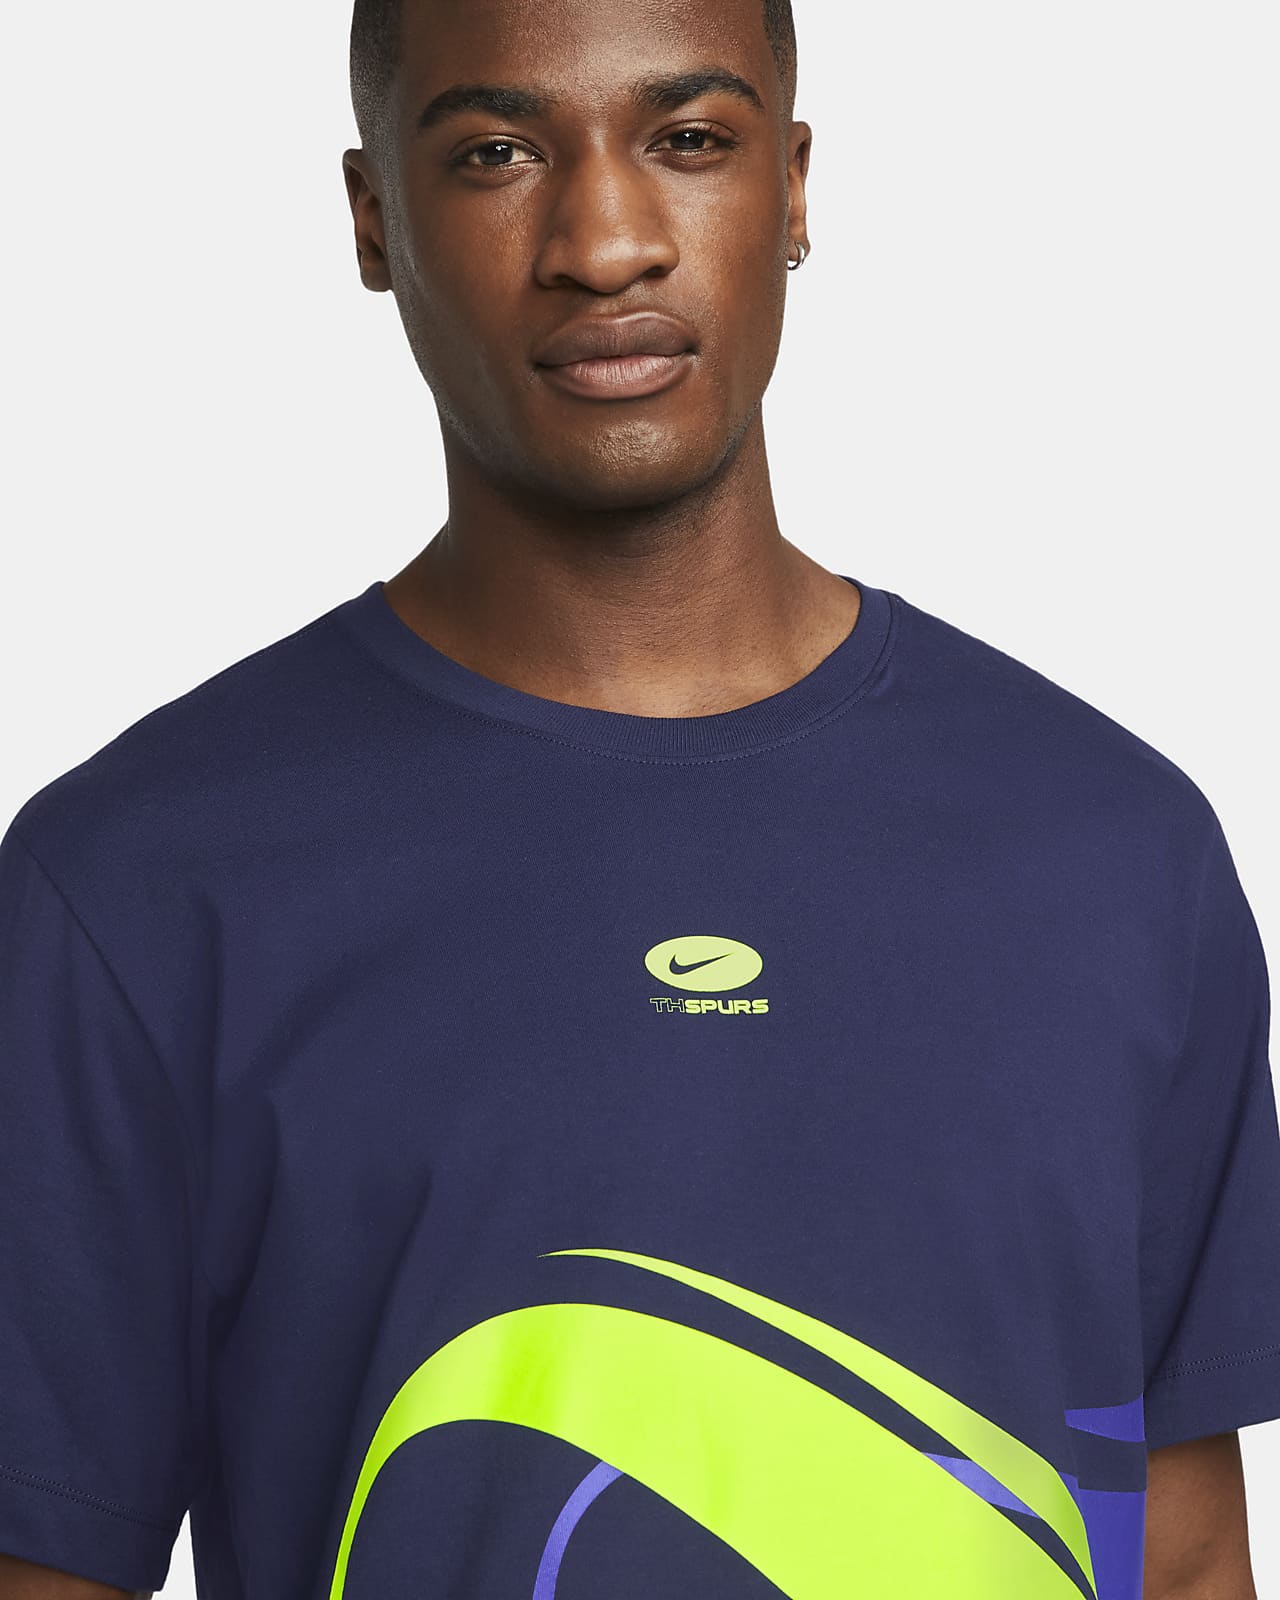 Tottenham Hotspur Men's Nike T-Shirt.